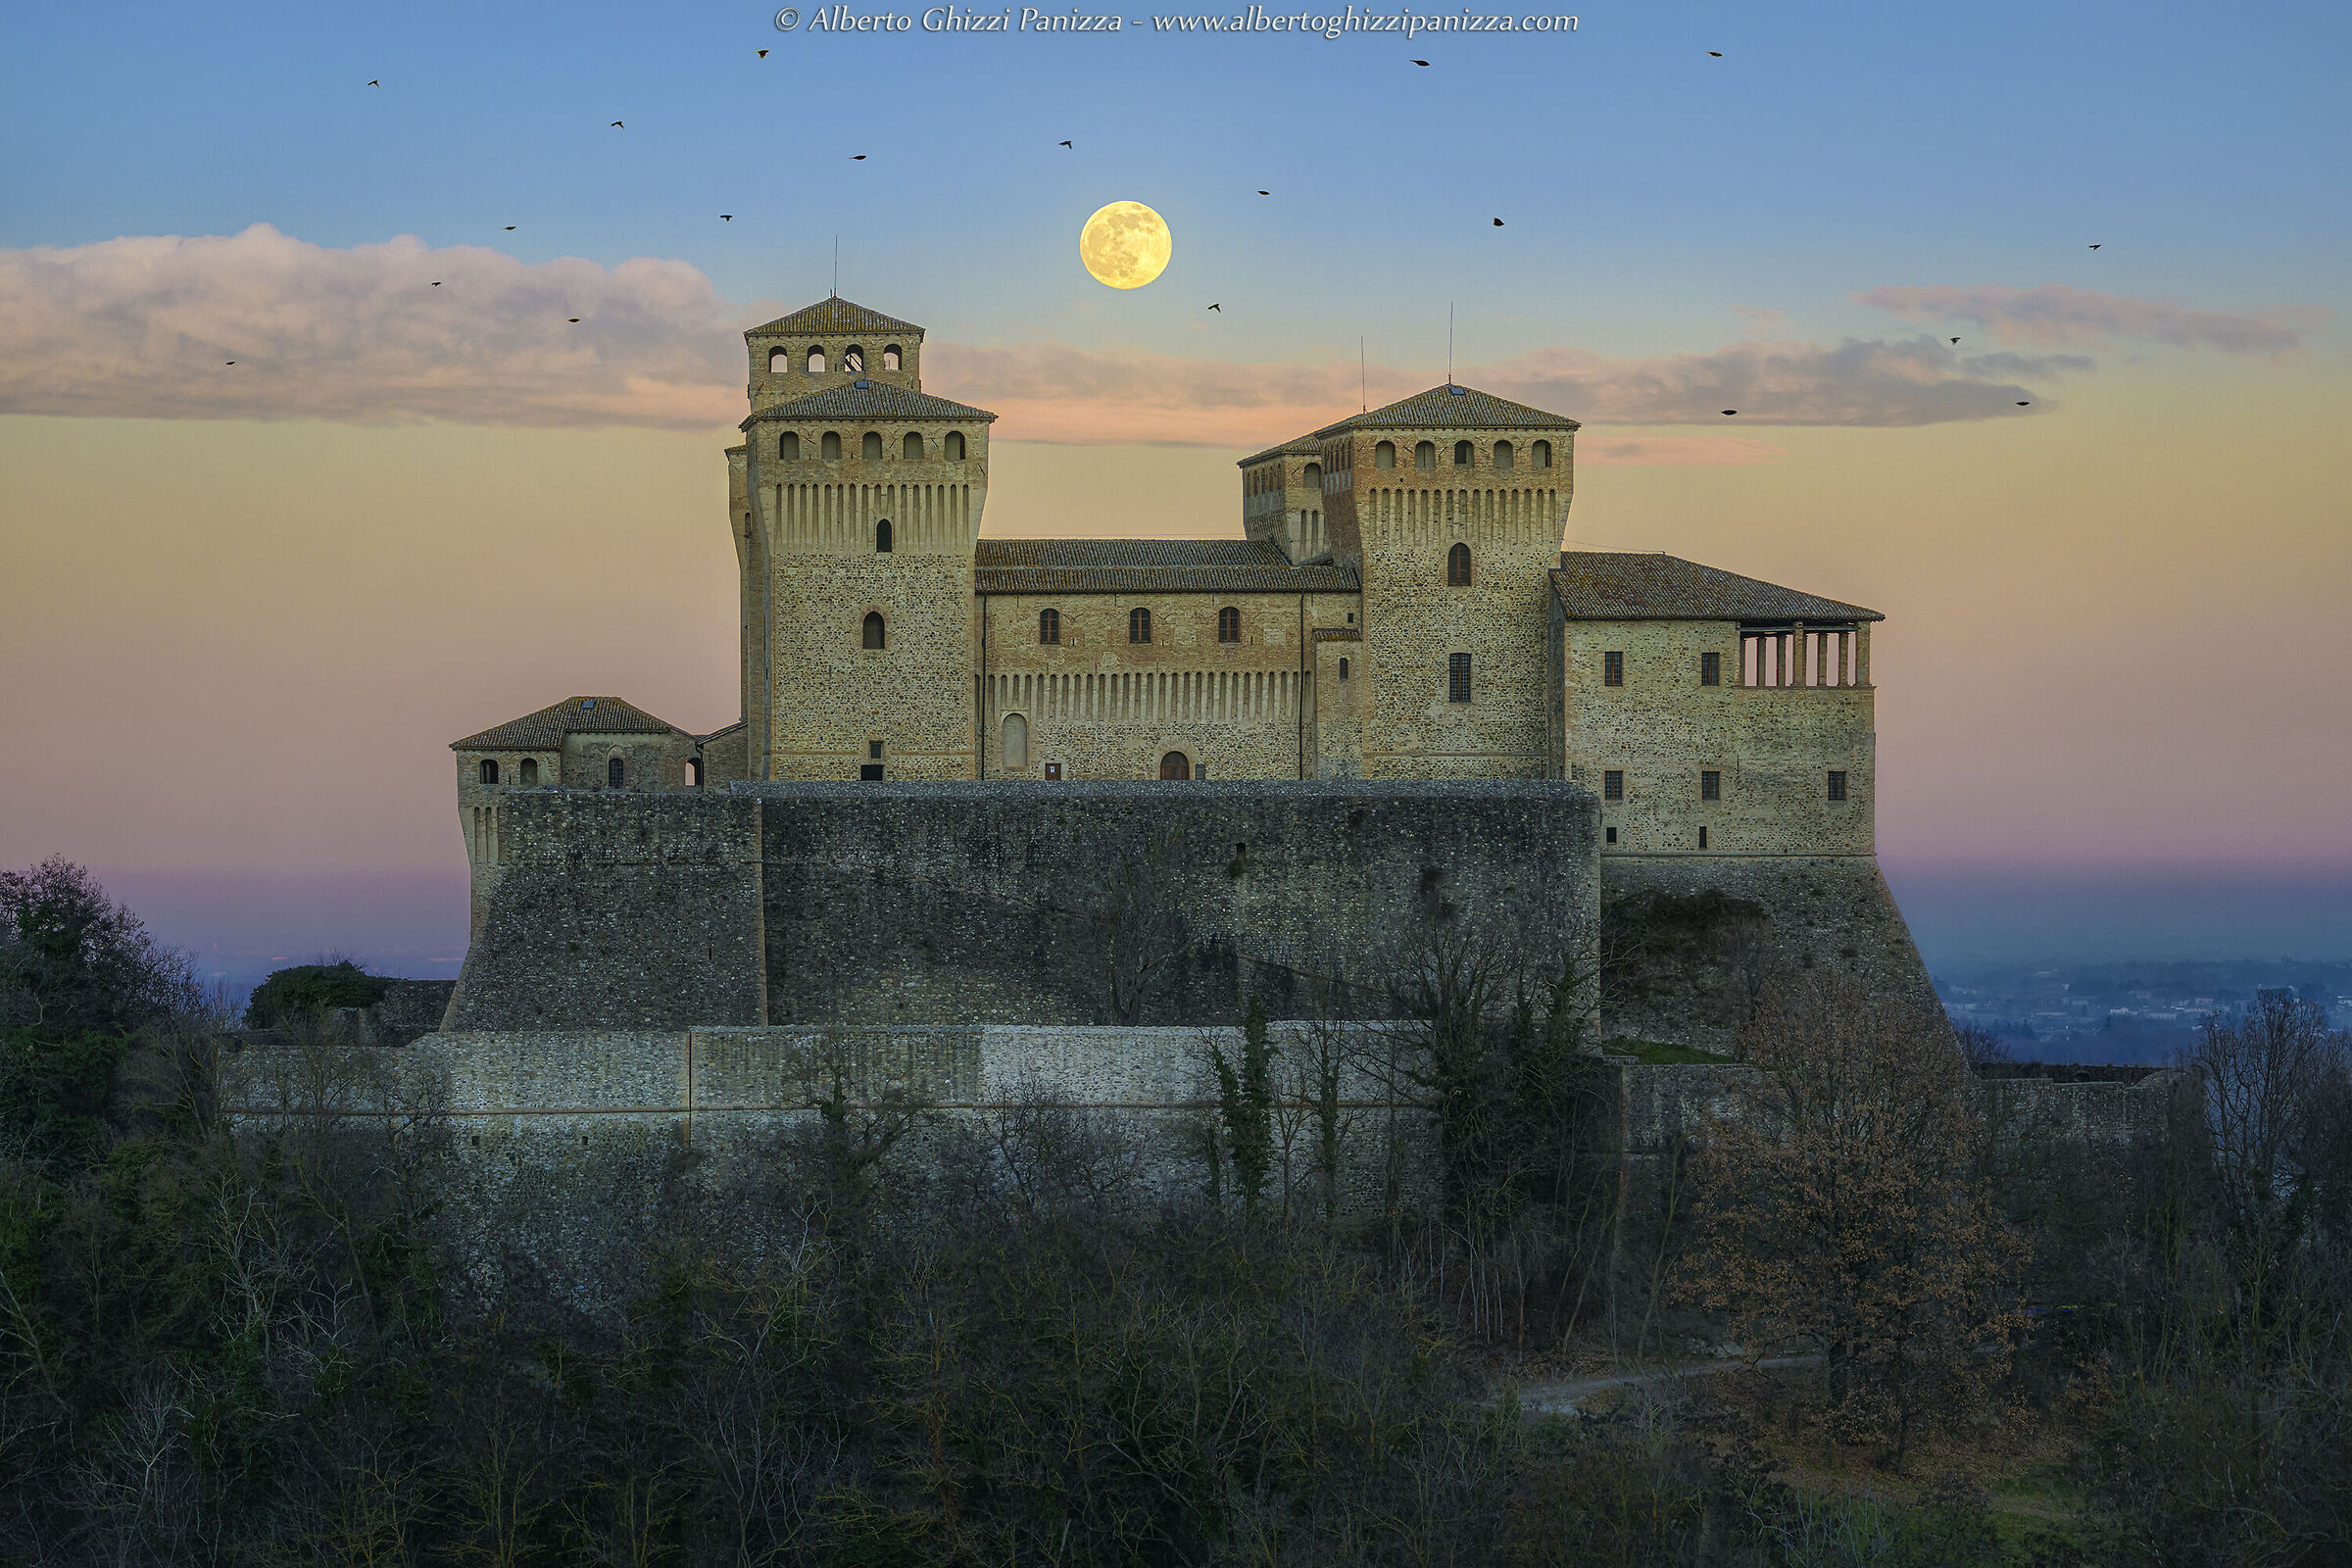 La Luna piena del lupo sorge dietro al castello...